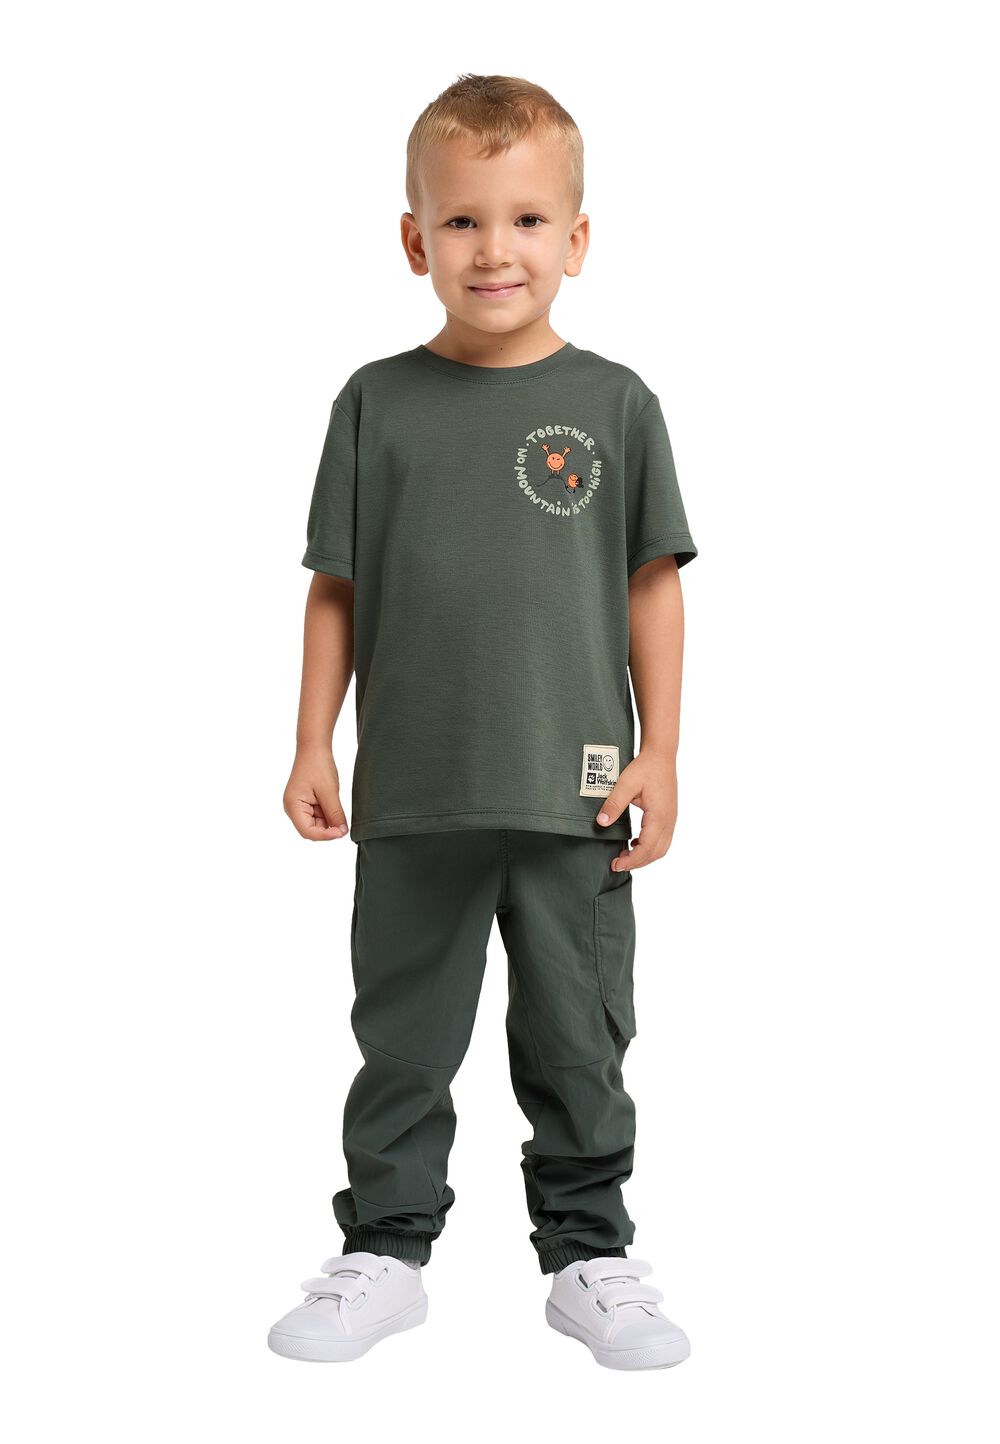 Jack Wolfskin Smileyworld Together T-Shirt Kids Functioneel shirt Kinderen 92 grijs slate green